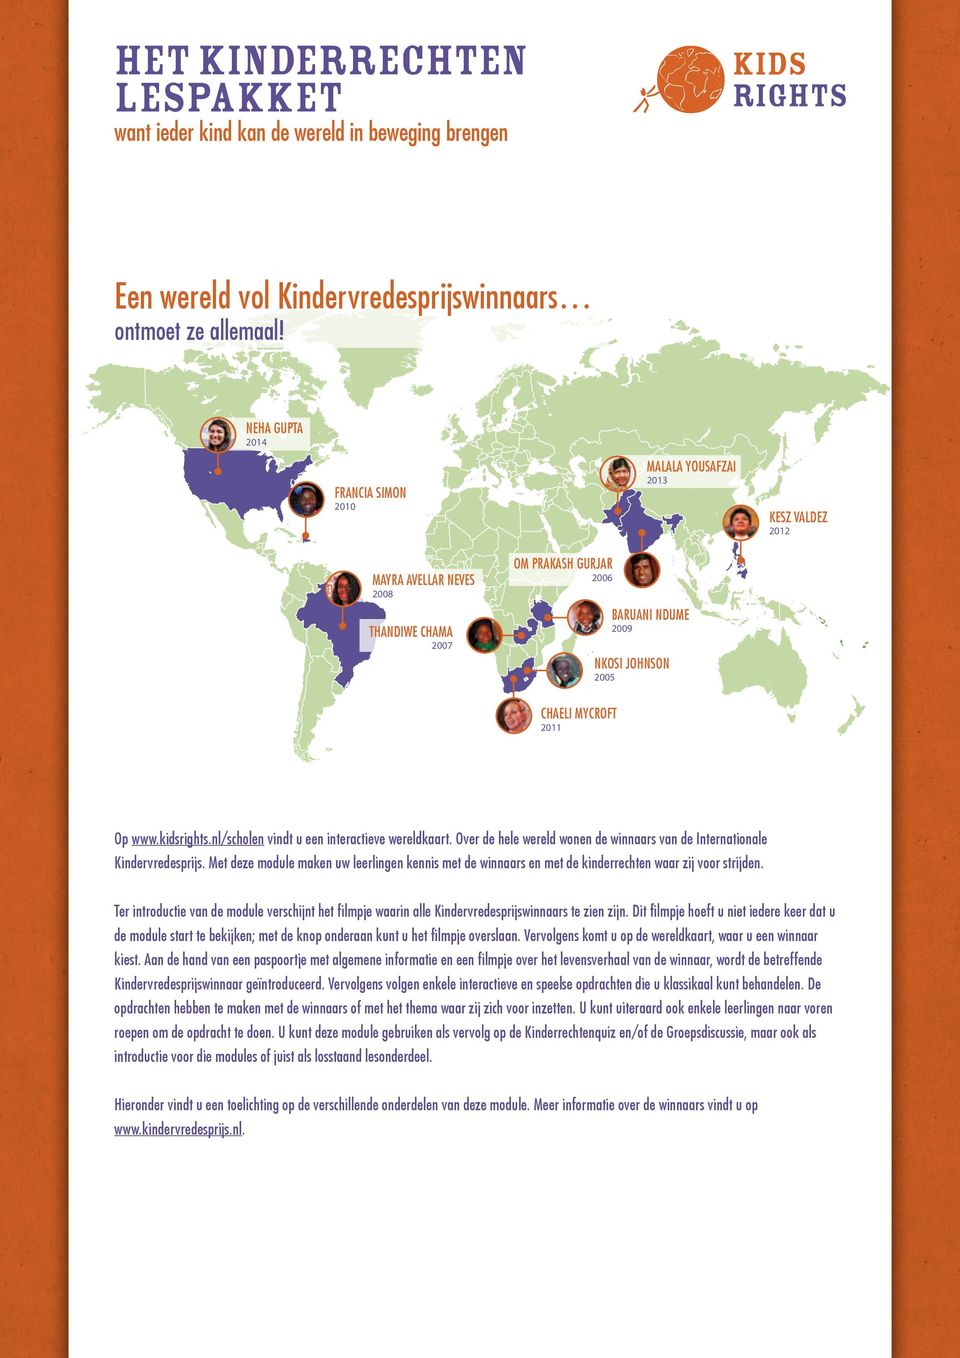 2011 Op www.kidsrights.nl/scholen vindt u een interactieve wereldkaart. Over de hele wereld wonen de winnaars van de Internationale Kindervredesprijs.